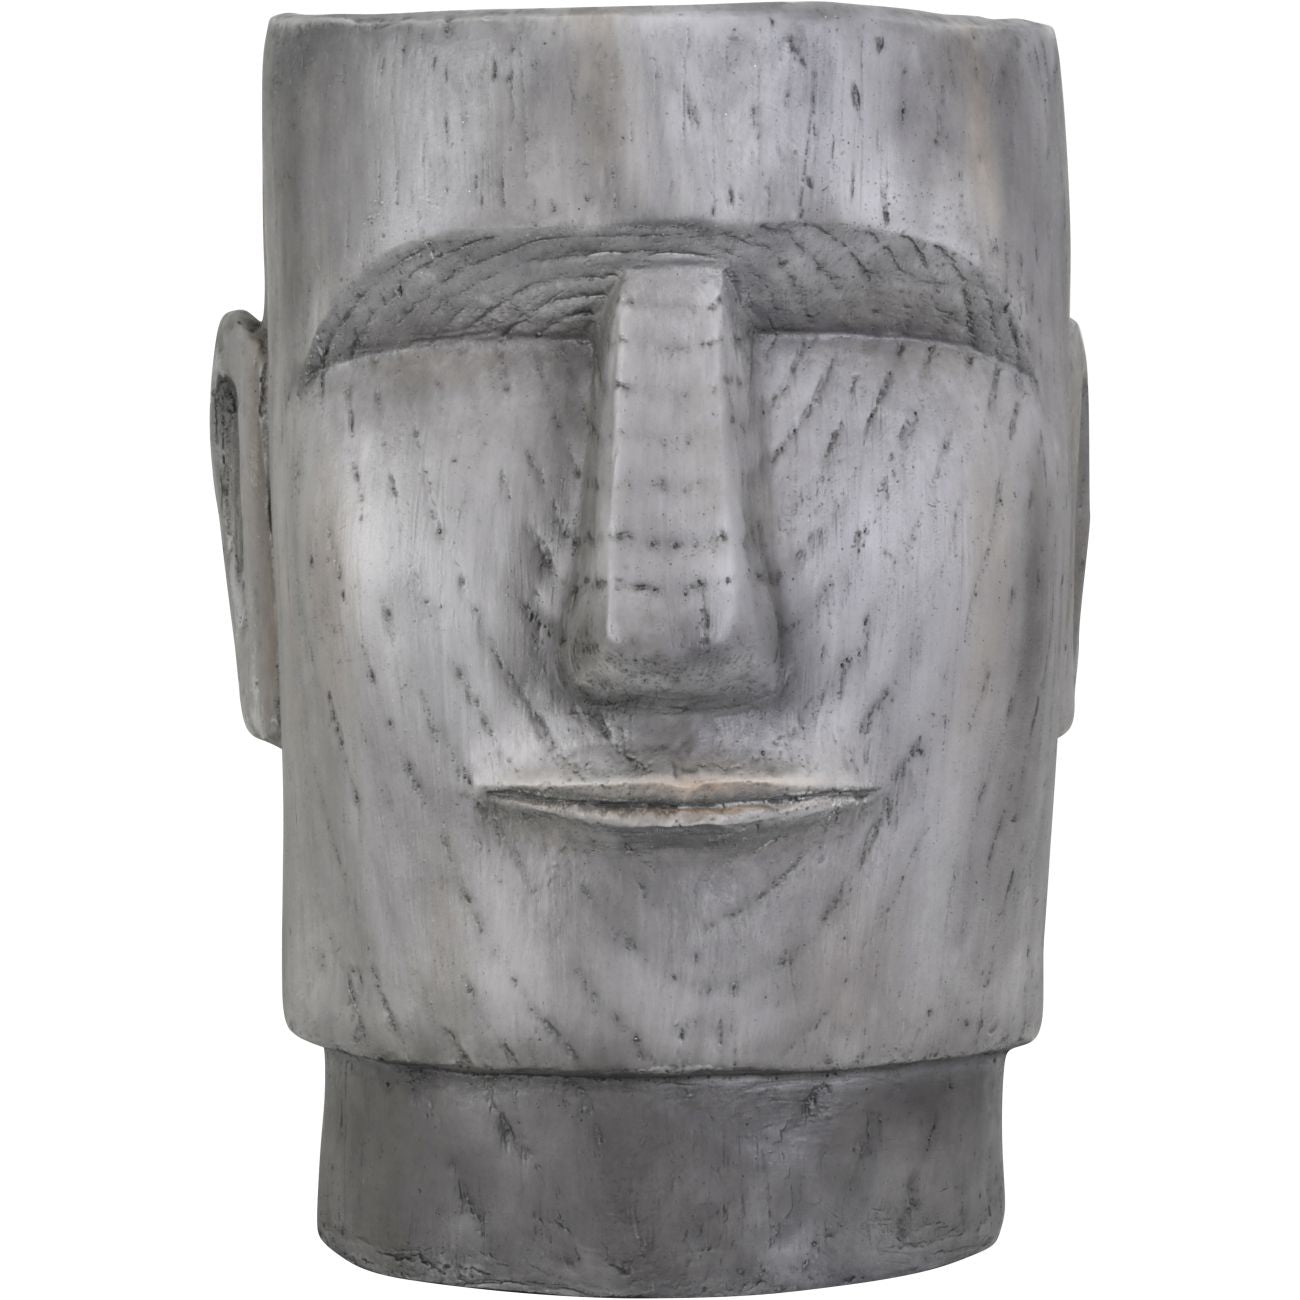 Moai Head Planter Small 36x35x42cm